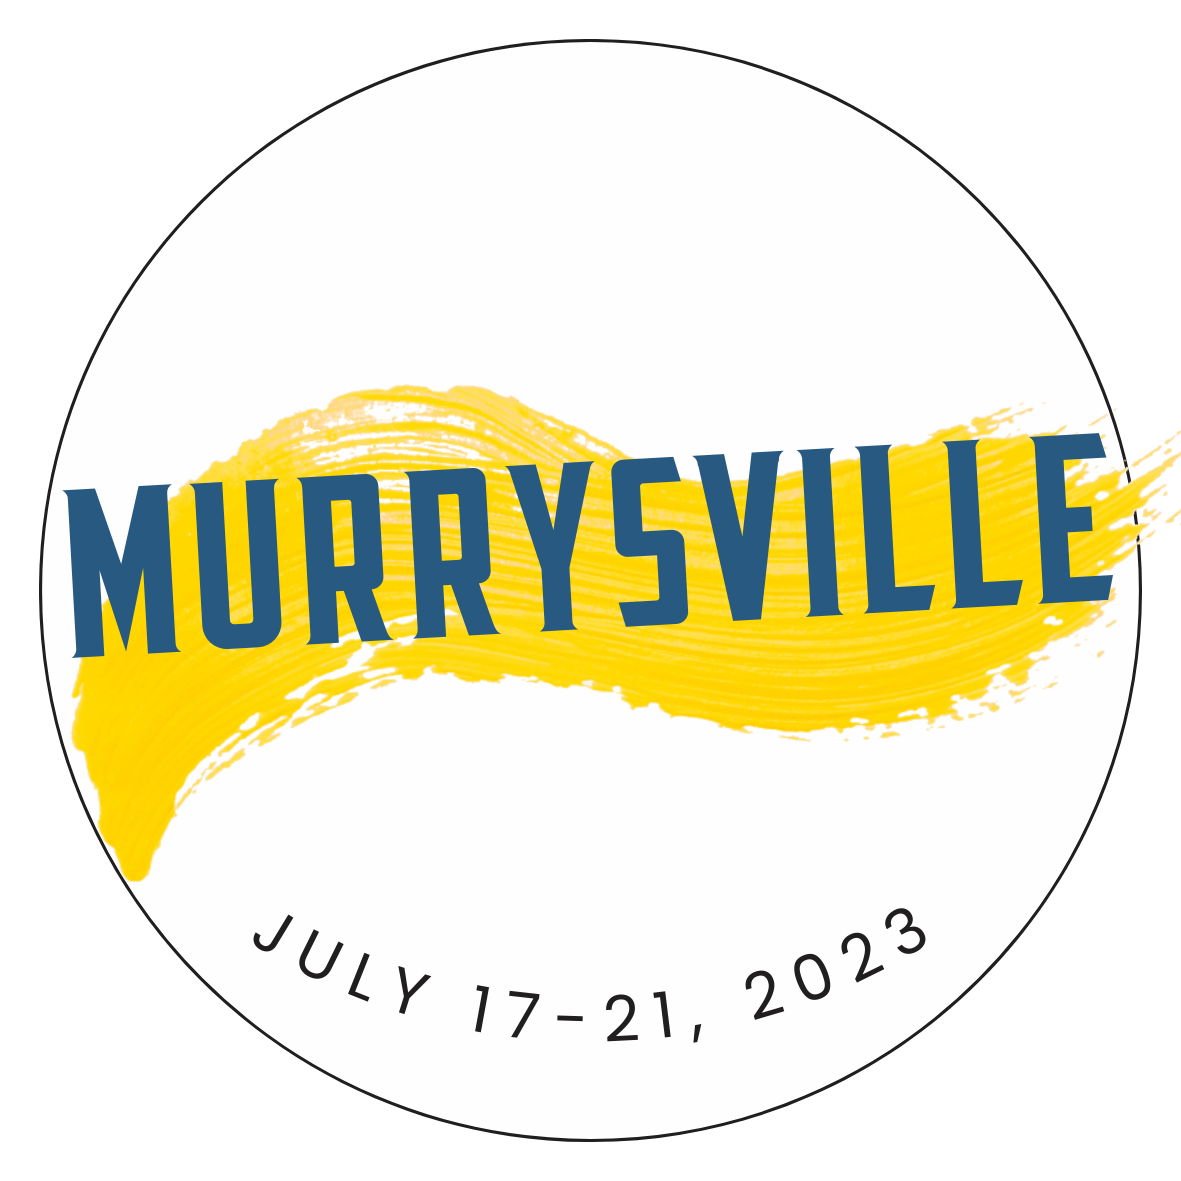 Murrysville